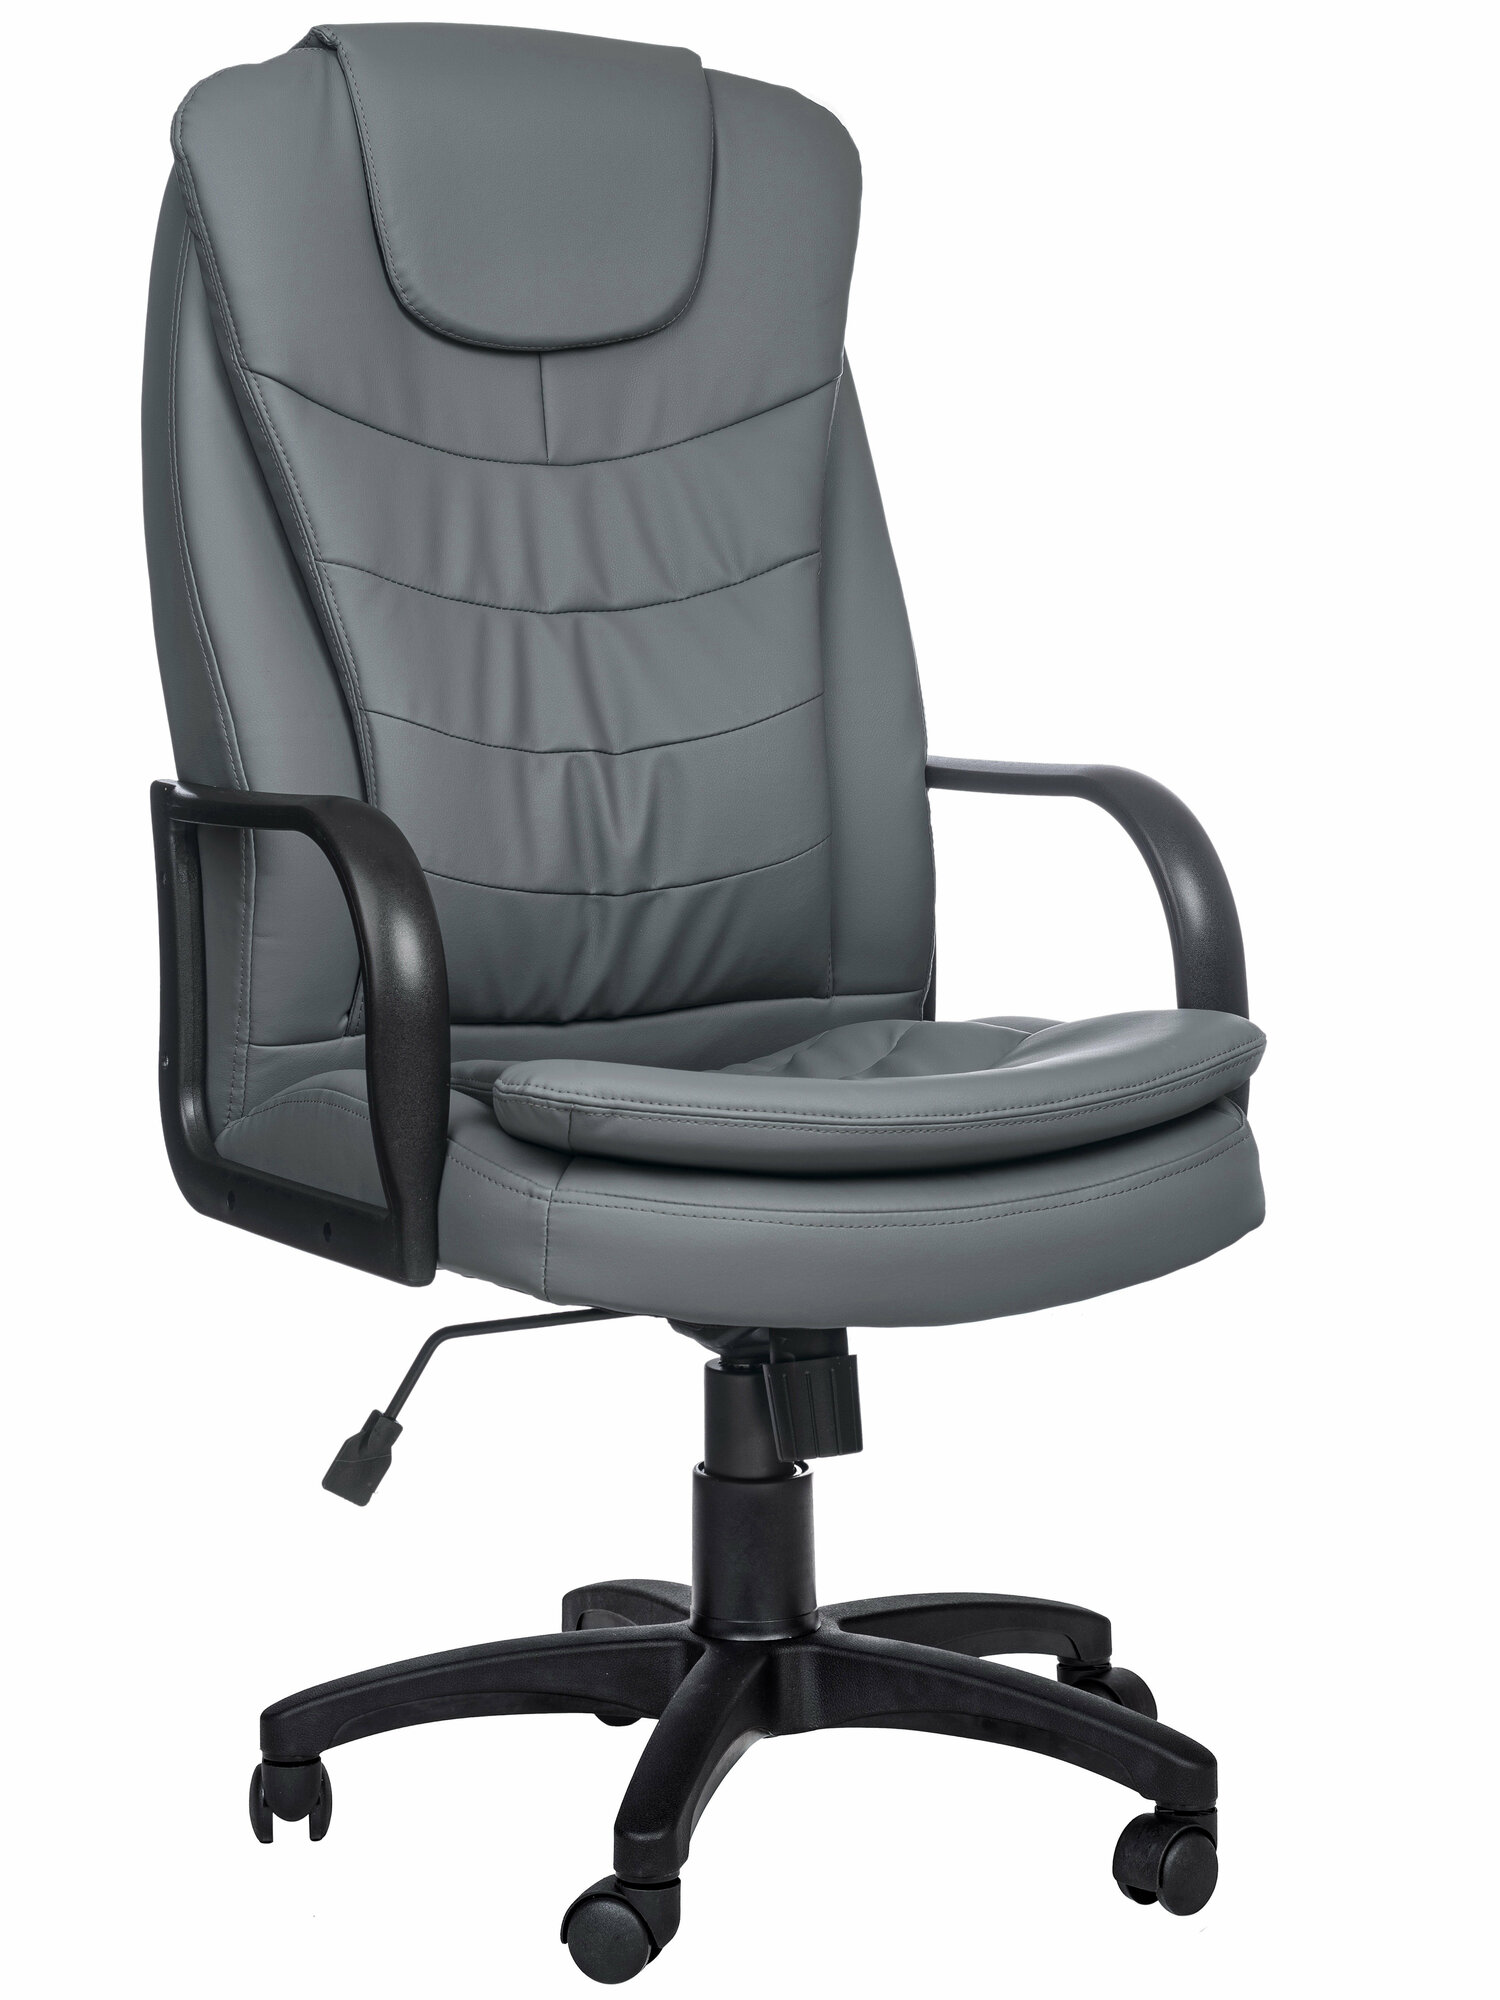 Компьютерное офисное кресло РосКресла Patrick-1 на колесиках, обивка: искусственная кожа, цвет: серый